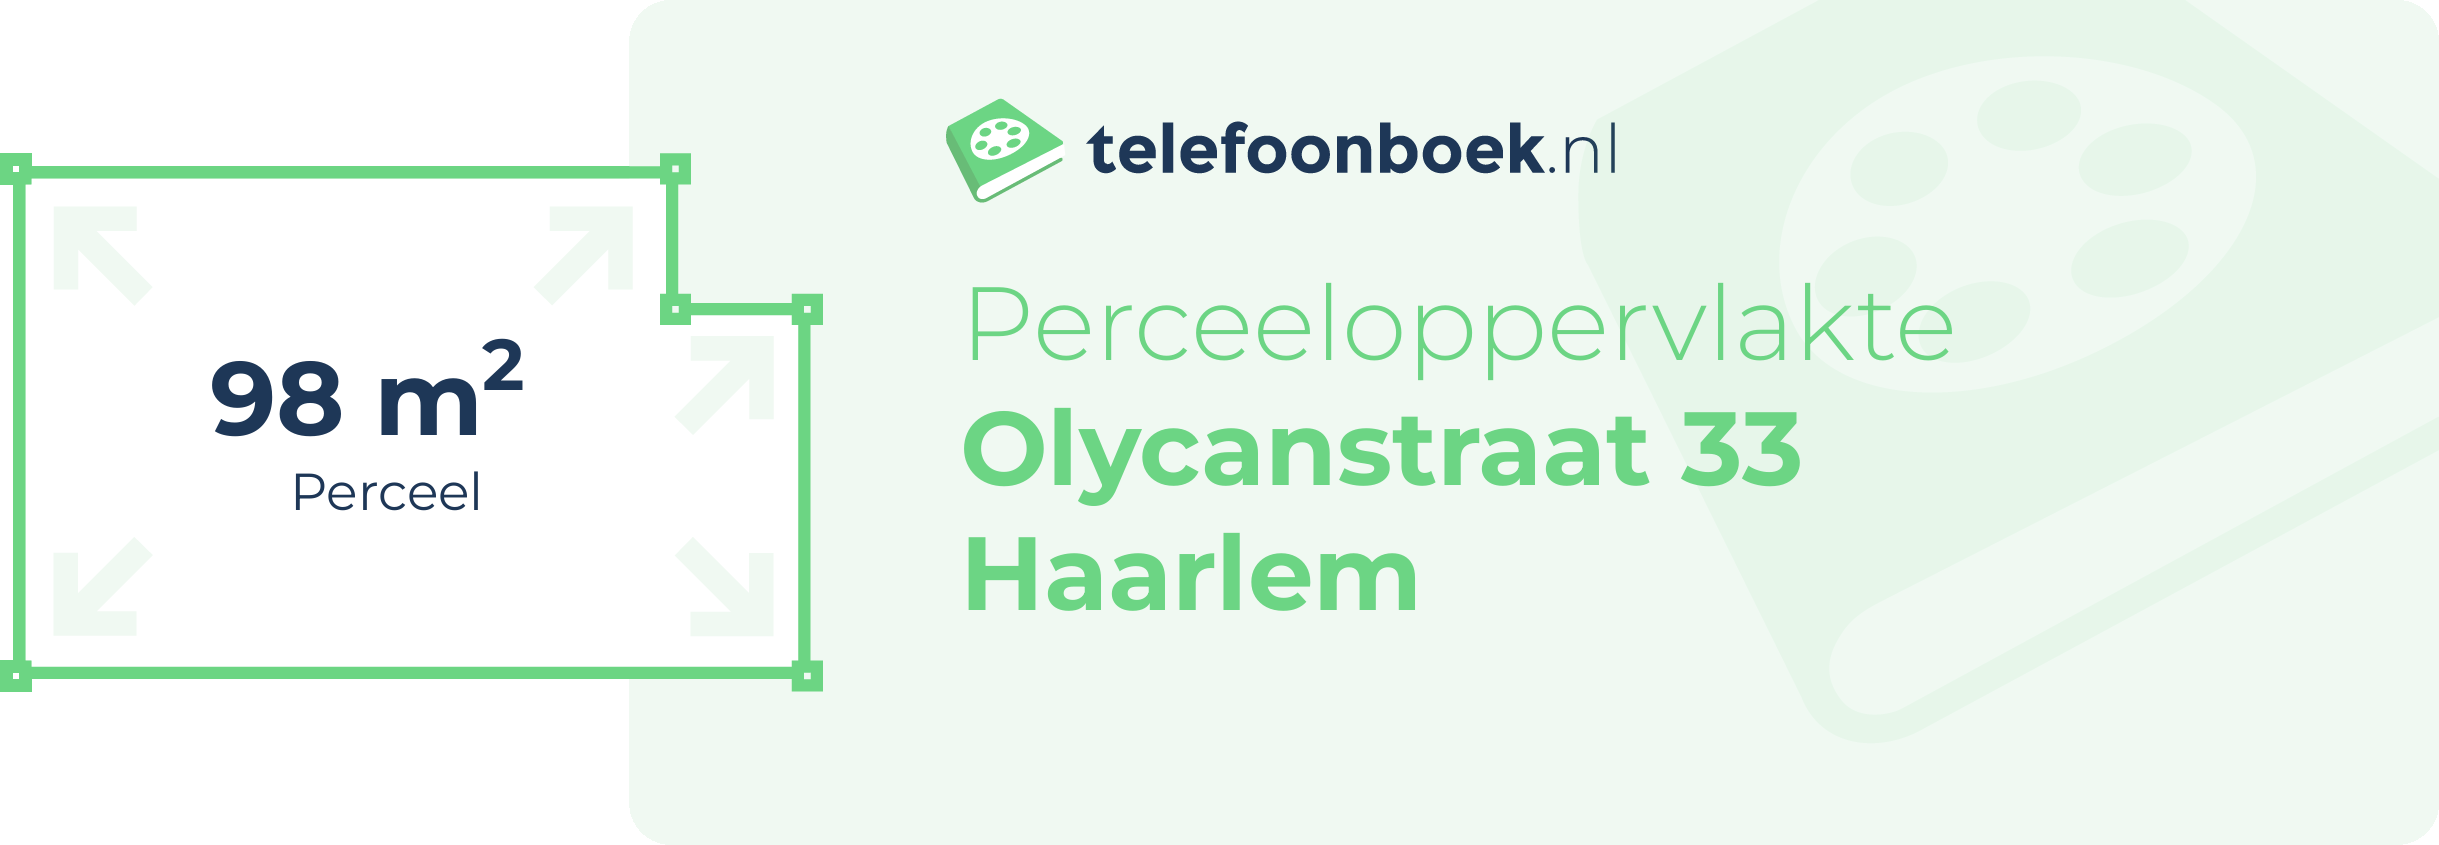 Perceeloppervlakte Olycanstraat 33 Haarlem